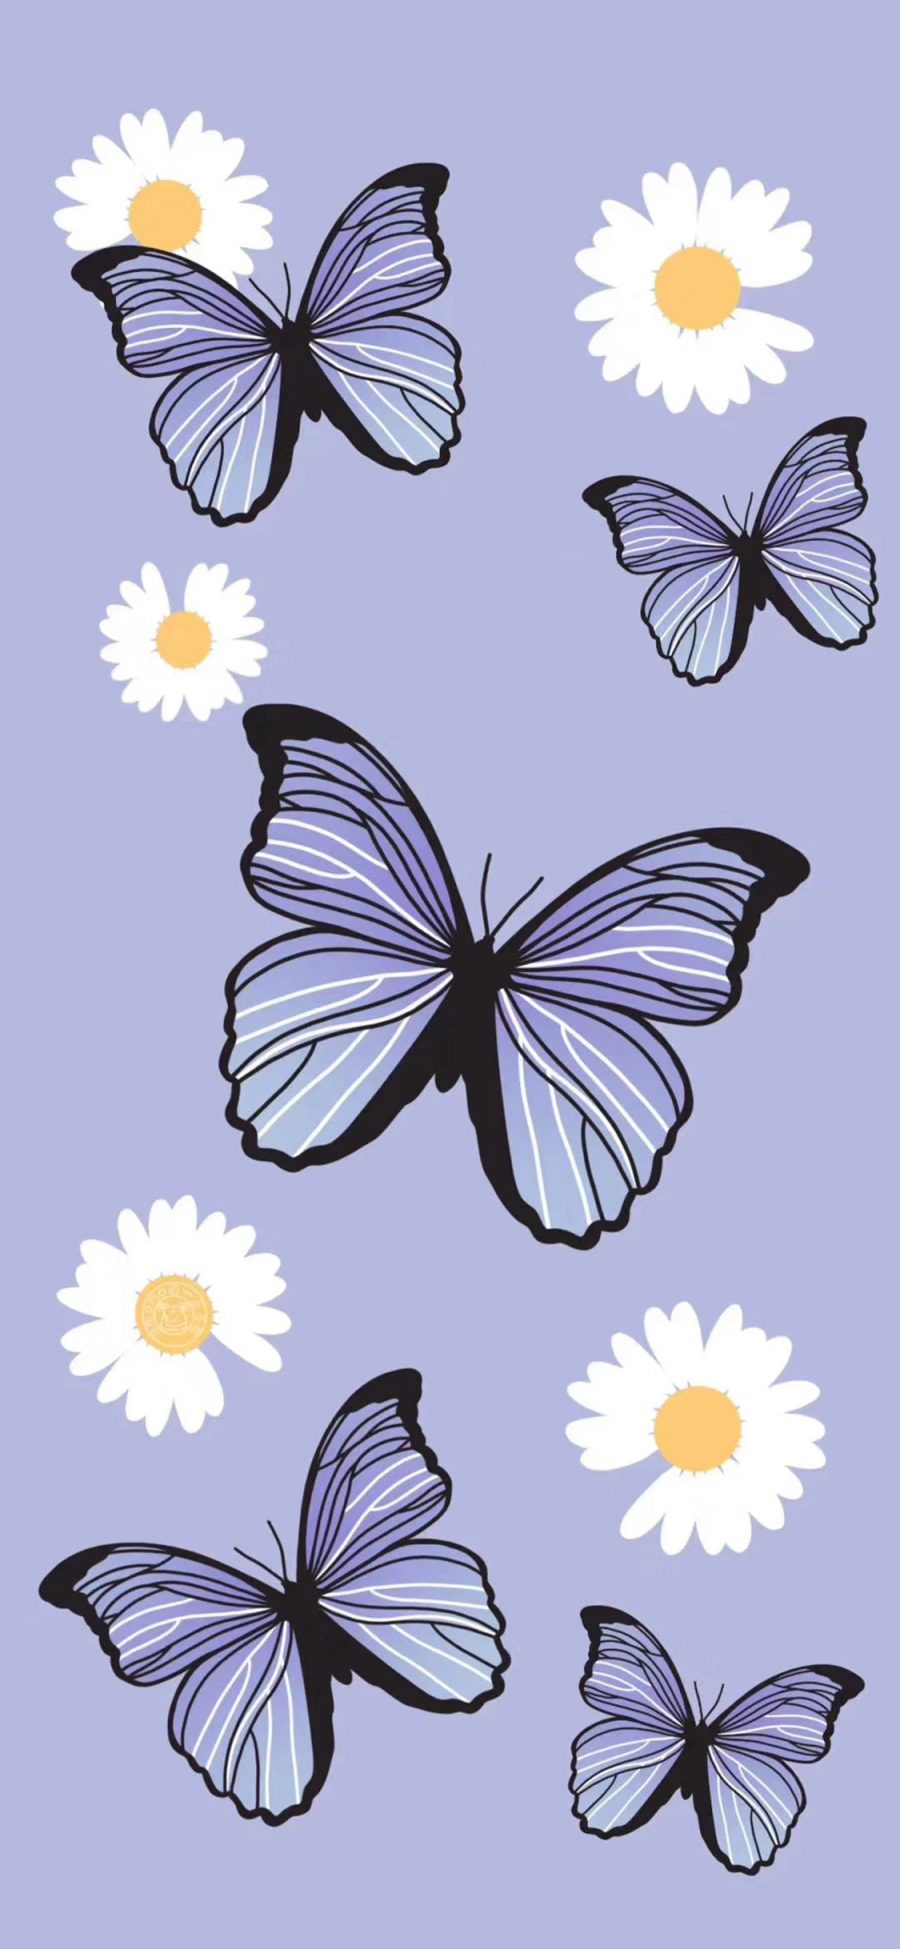 [2436×1125]插图 蝴蝶 紫色 元素 苹果手机动漫壁纸图片